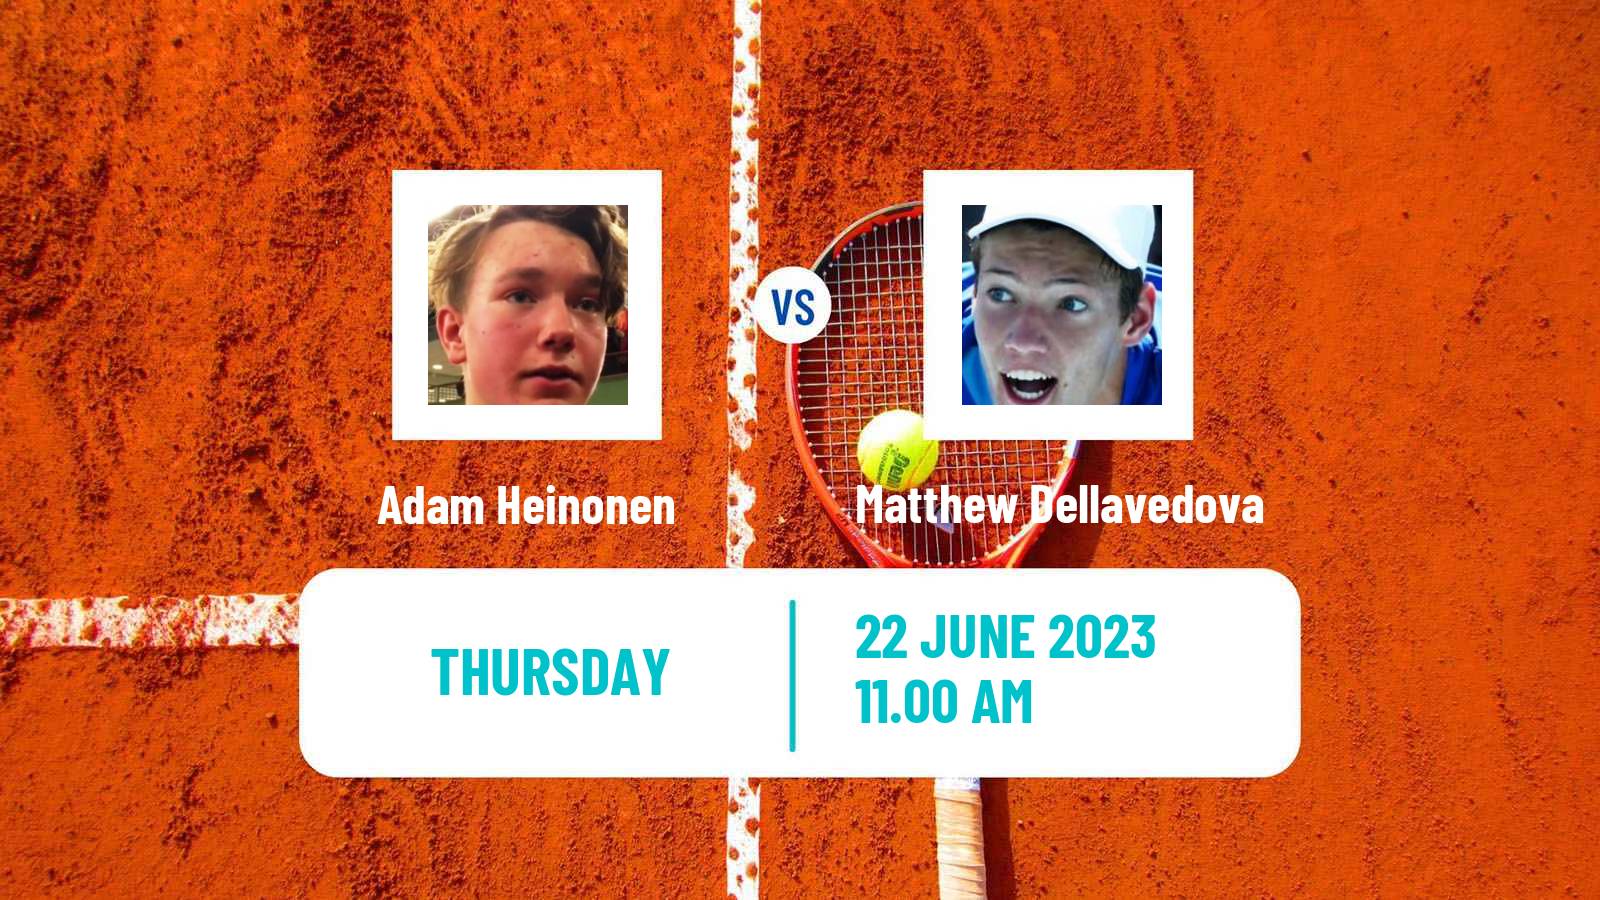 Tennis ITF M15 Saarlouis Men Adam Heinonen - Matthew Dellavedova